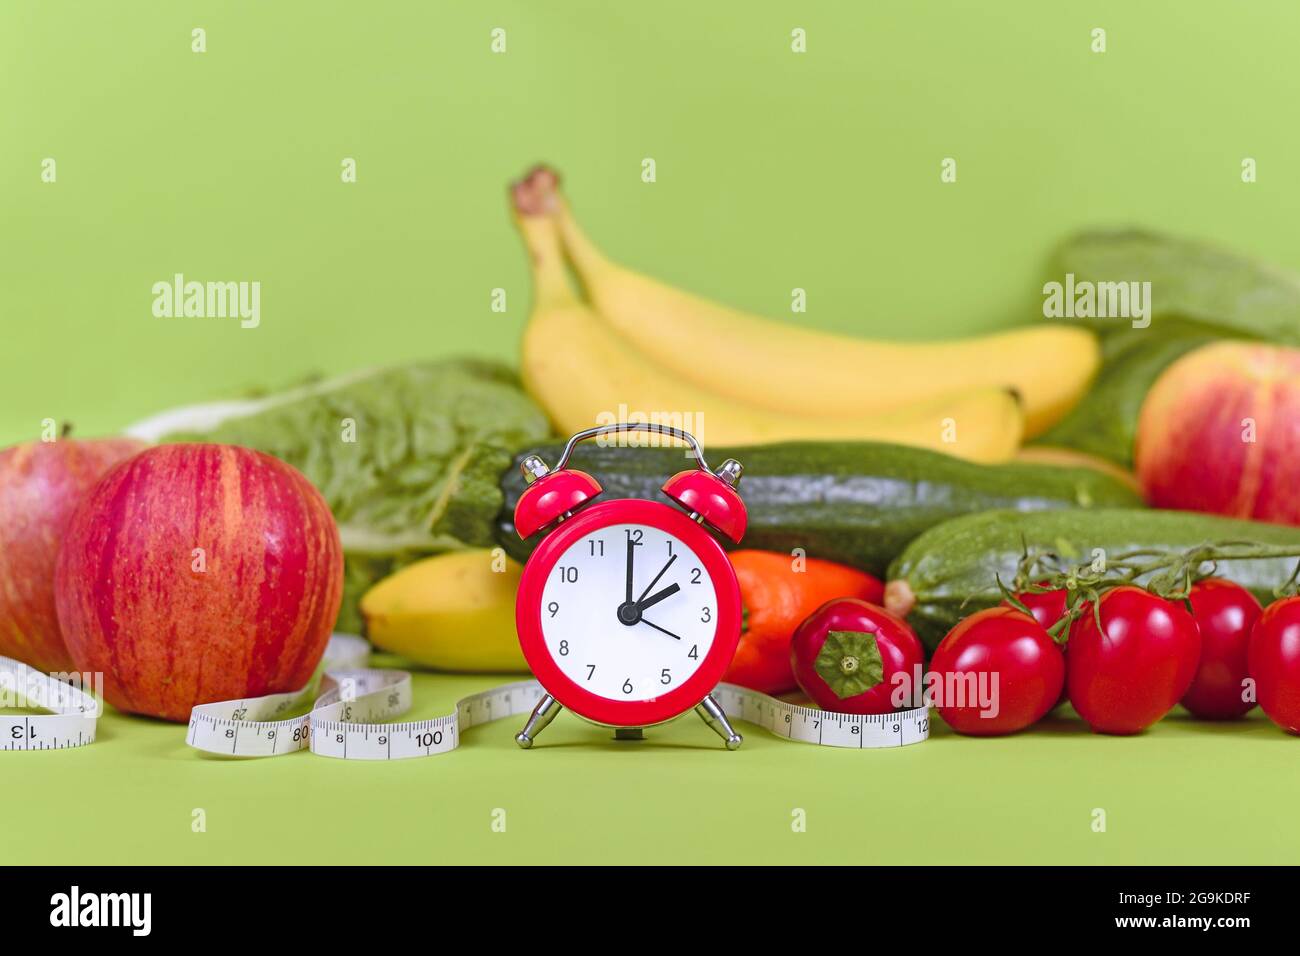 Concetto di dieta per perdere peso con solo mangiare cibo sano in determinati momenti con verdure, frutta, metro a nastro e orologio Foto Stock